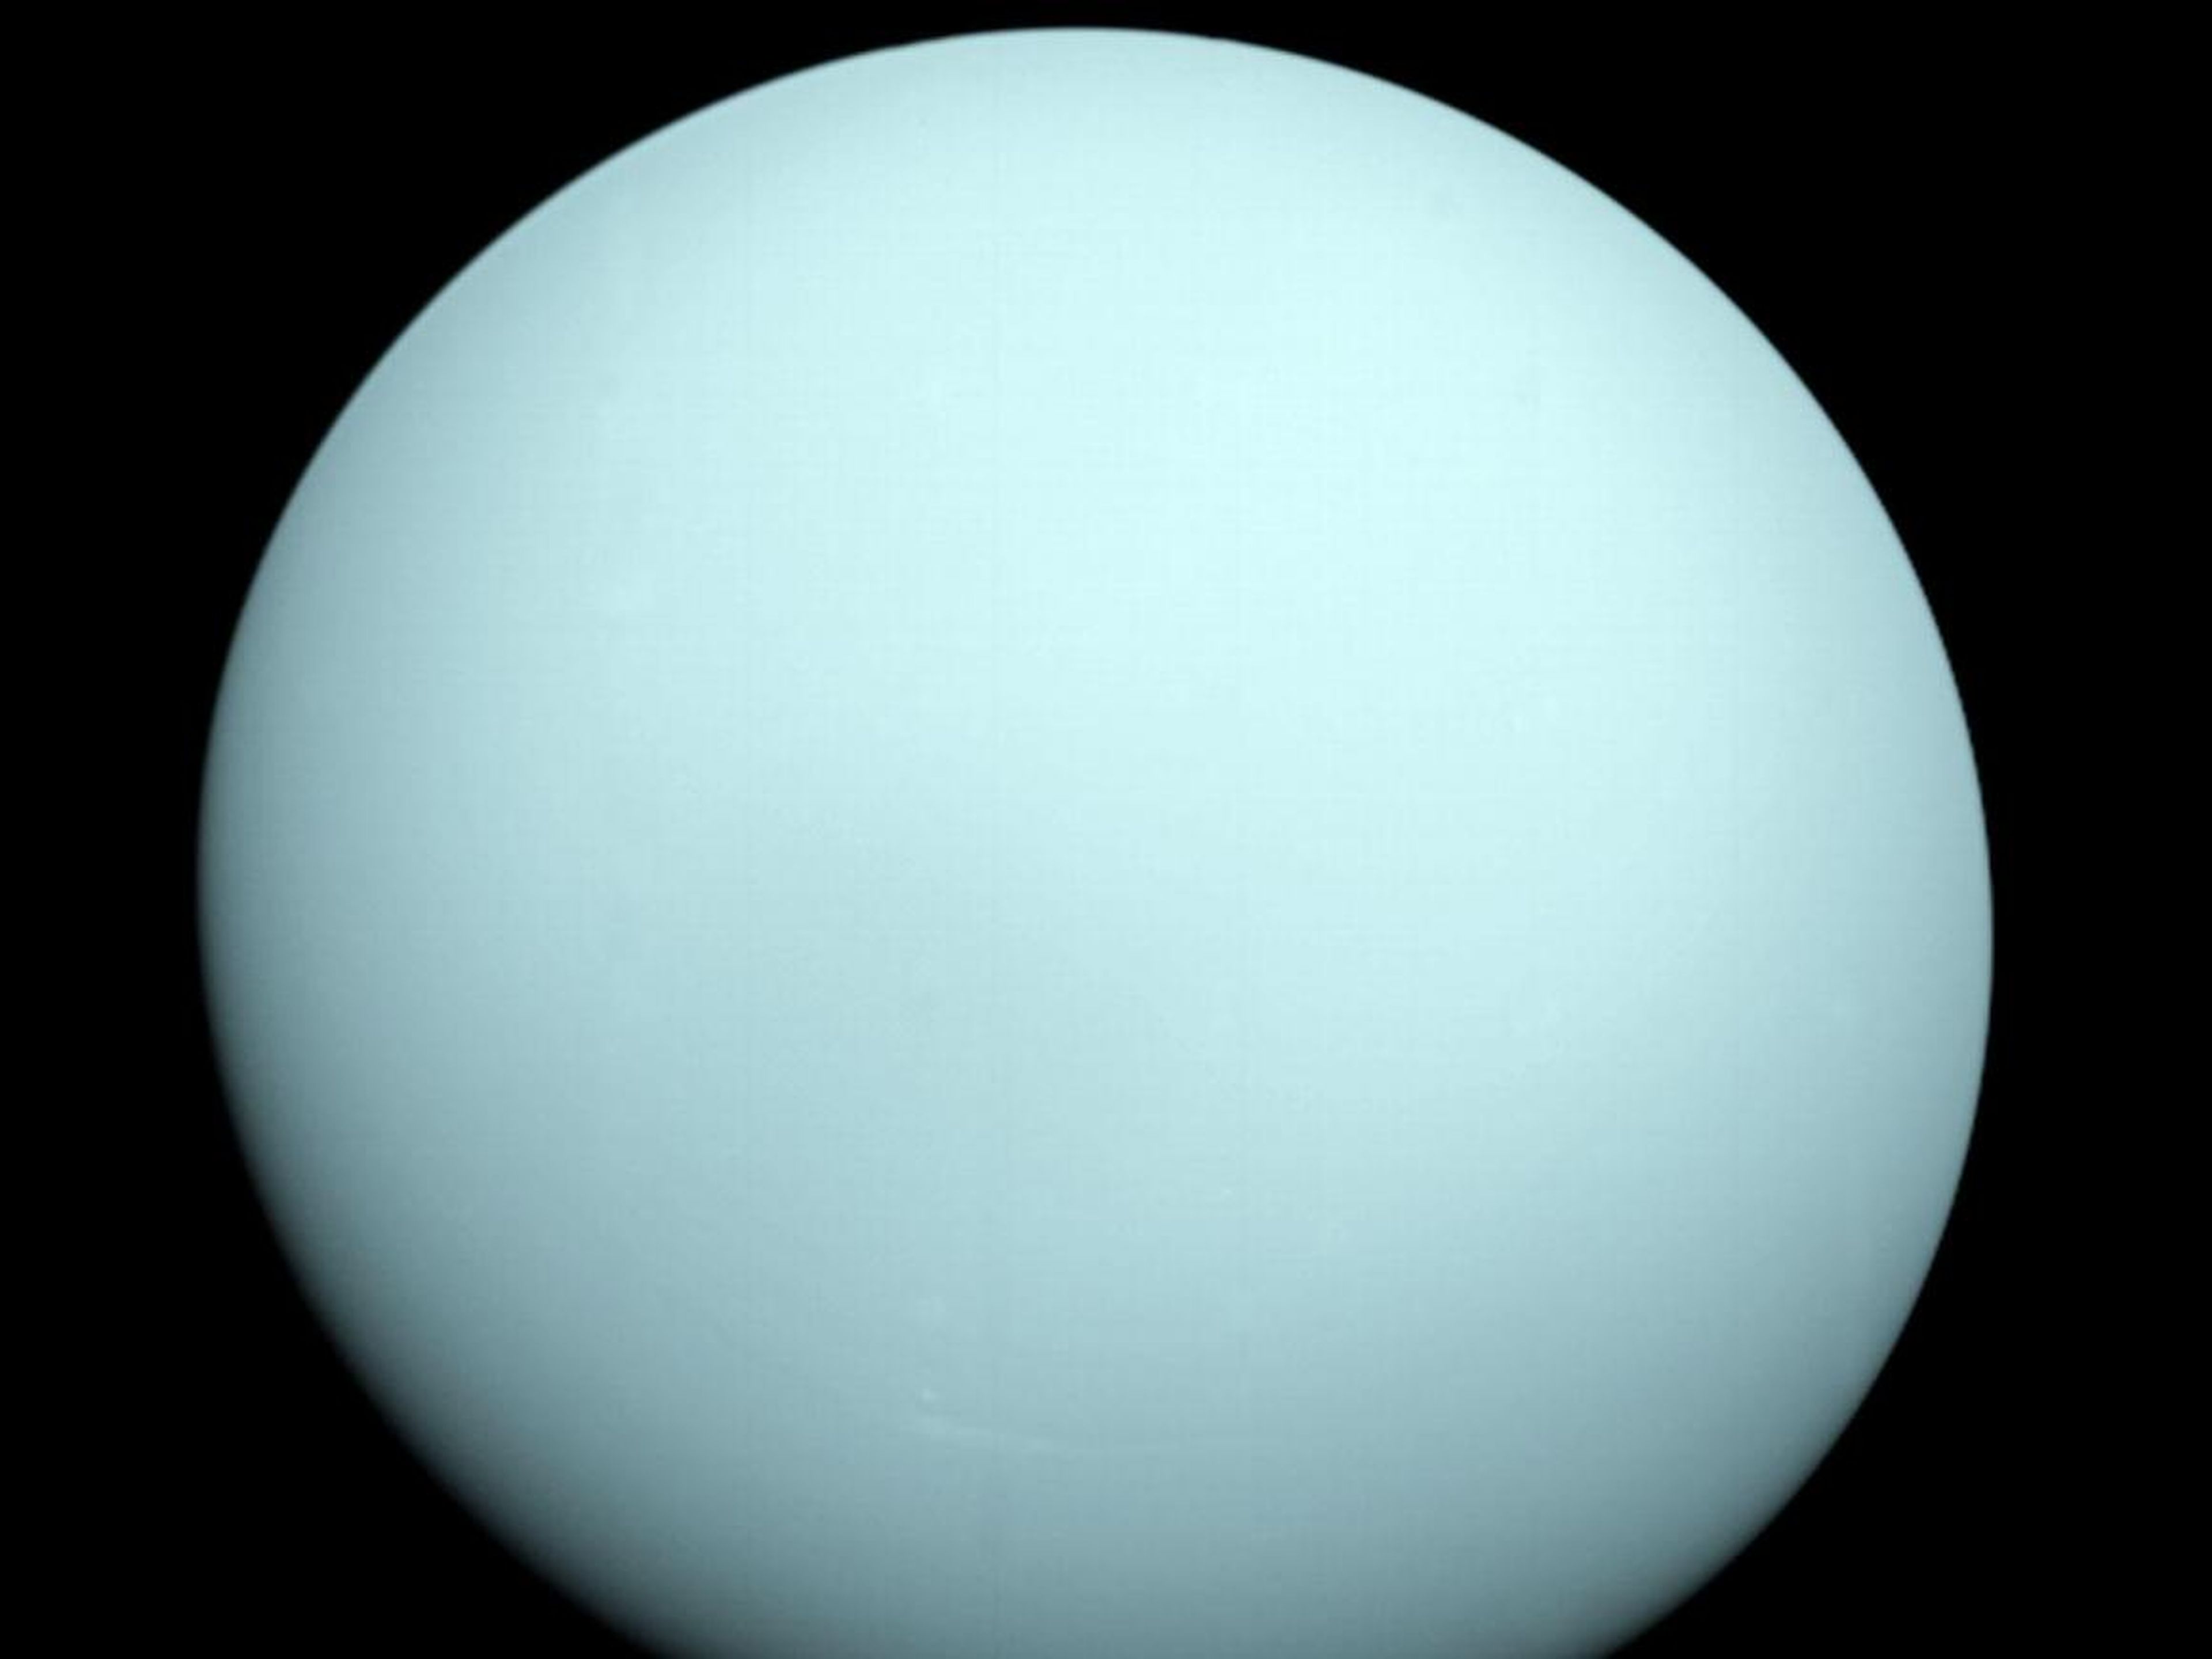 Fotografía de Urano tomada por la Voyager 2 el 14 de enero de 1986 a una distancia de 13 millones de kilómetros.